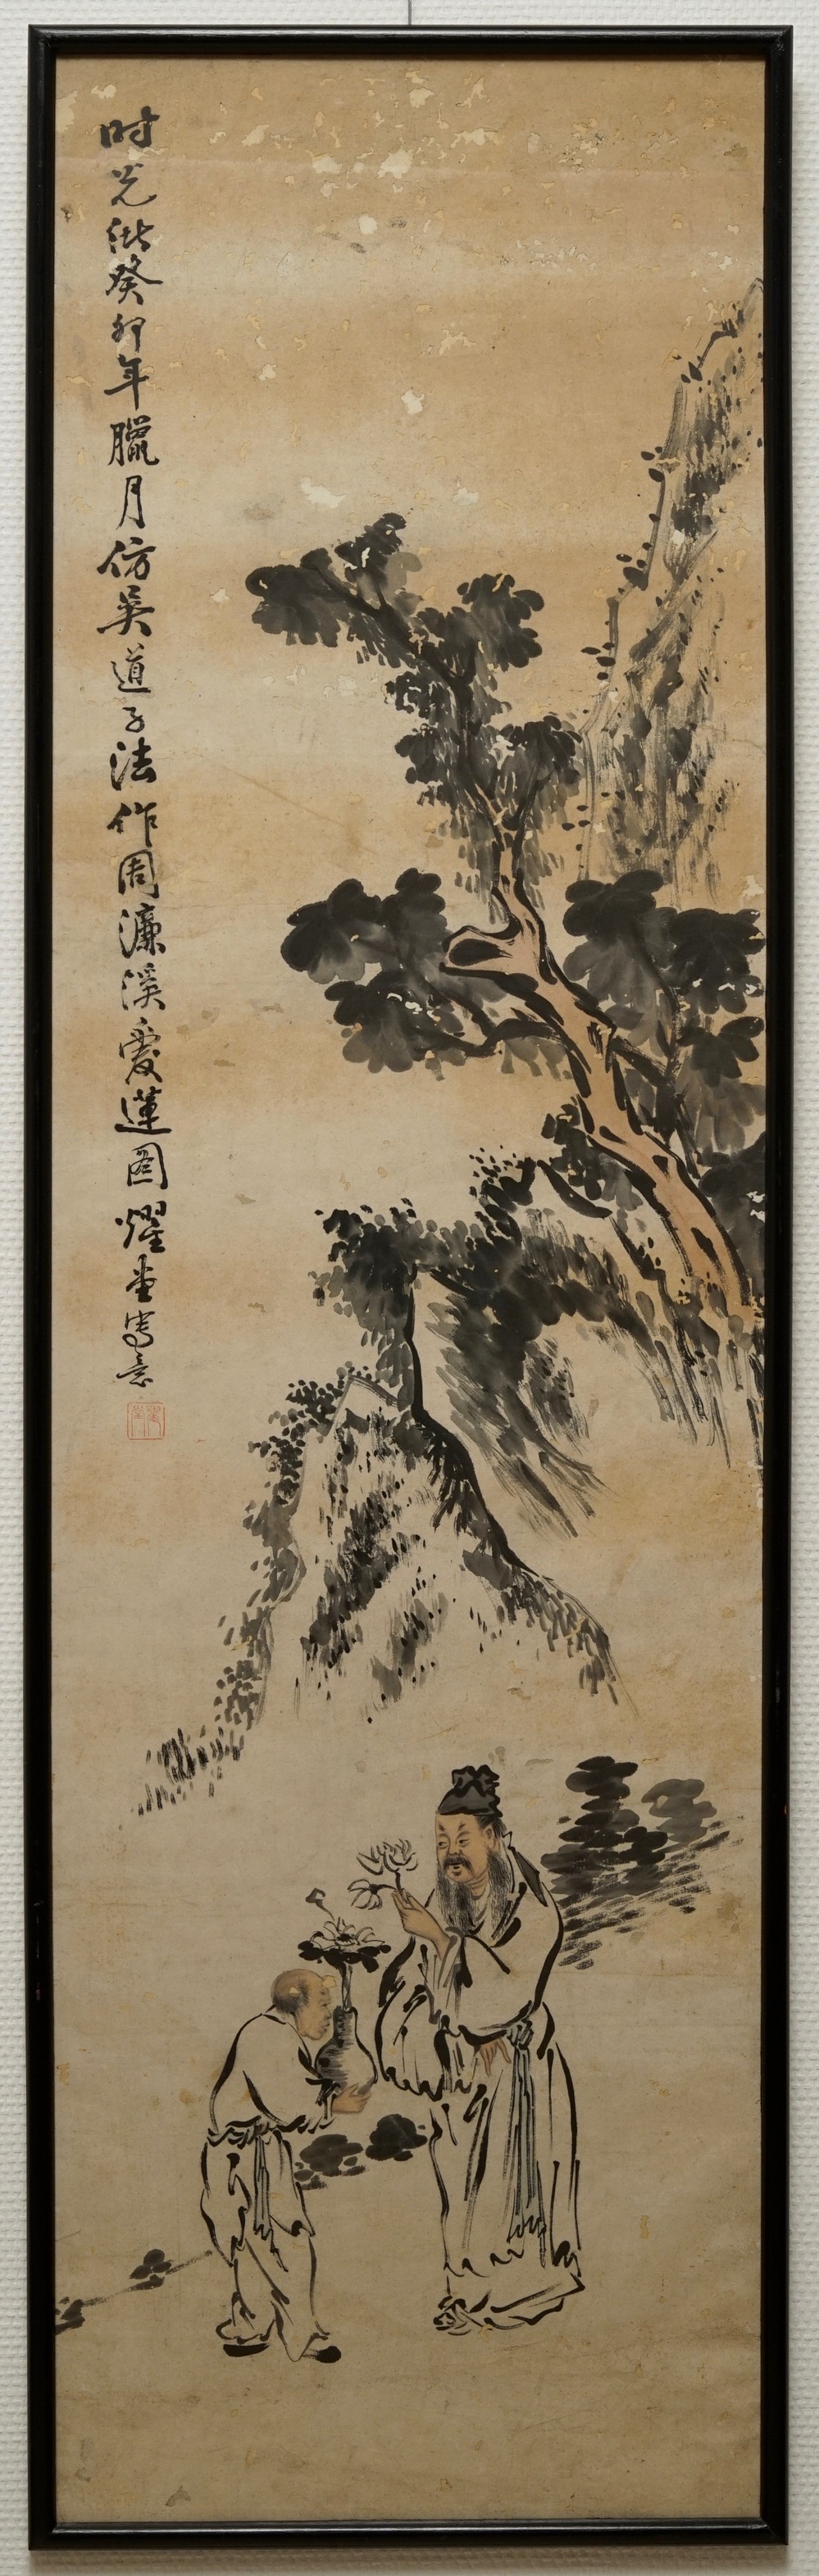 Yao Tang: Le philosophe Zhou Lian Xi, encre et couleur sur papier, dat&eacute;e 1843